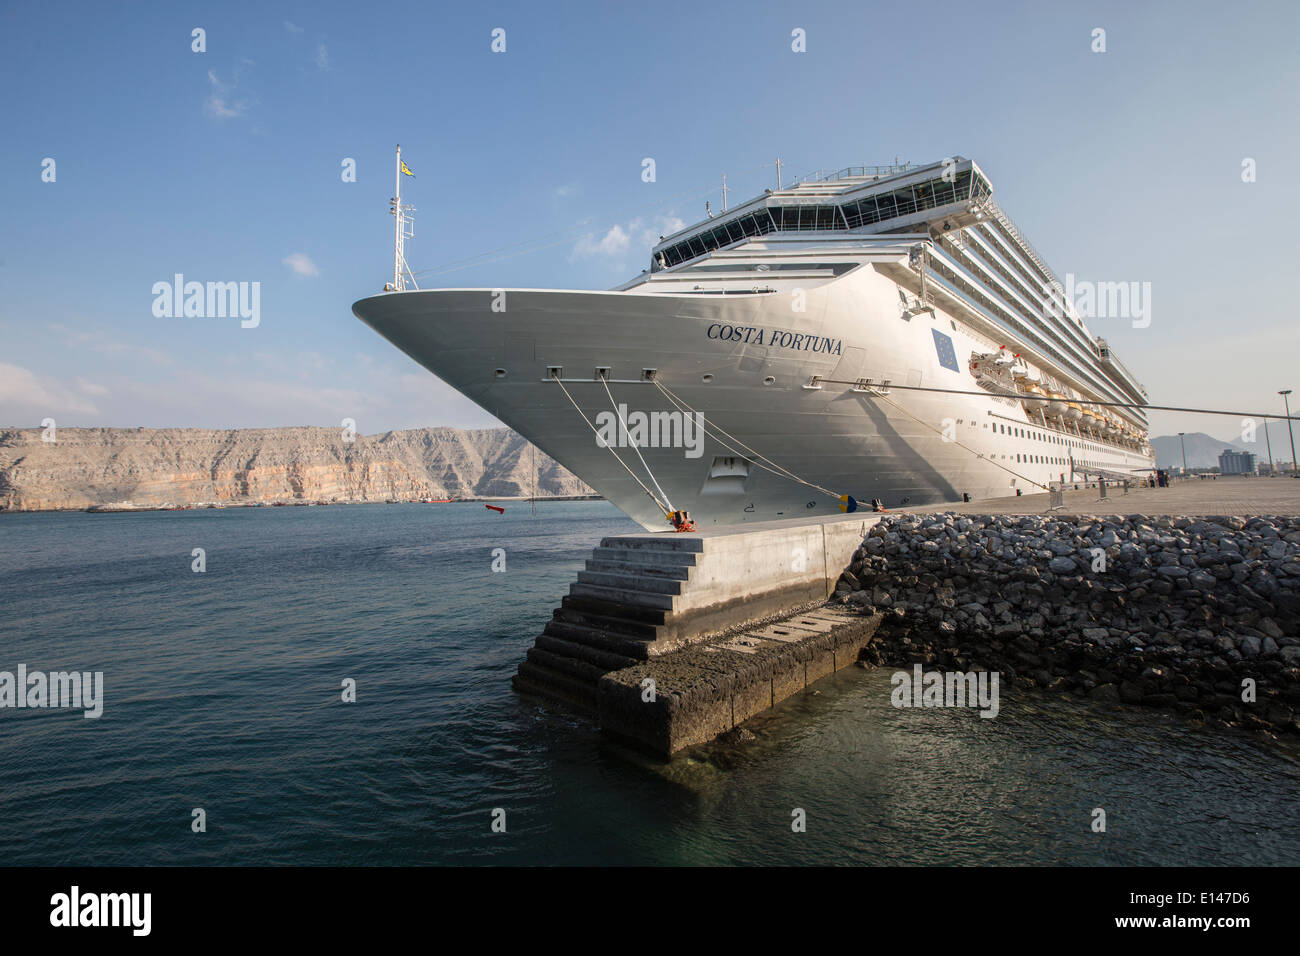 Oman, Khasab, navire de croisière Costa Fortuna Banque D'Images